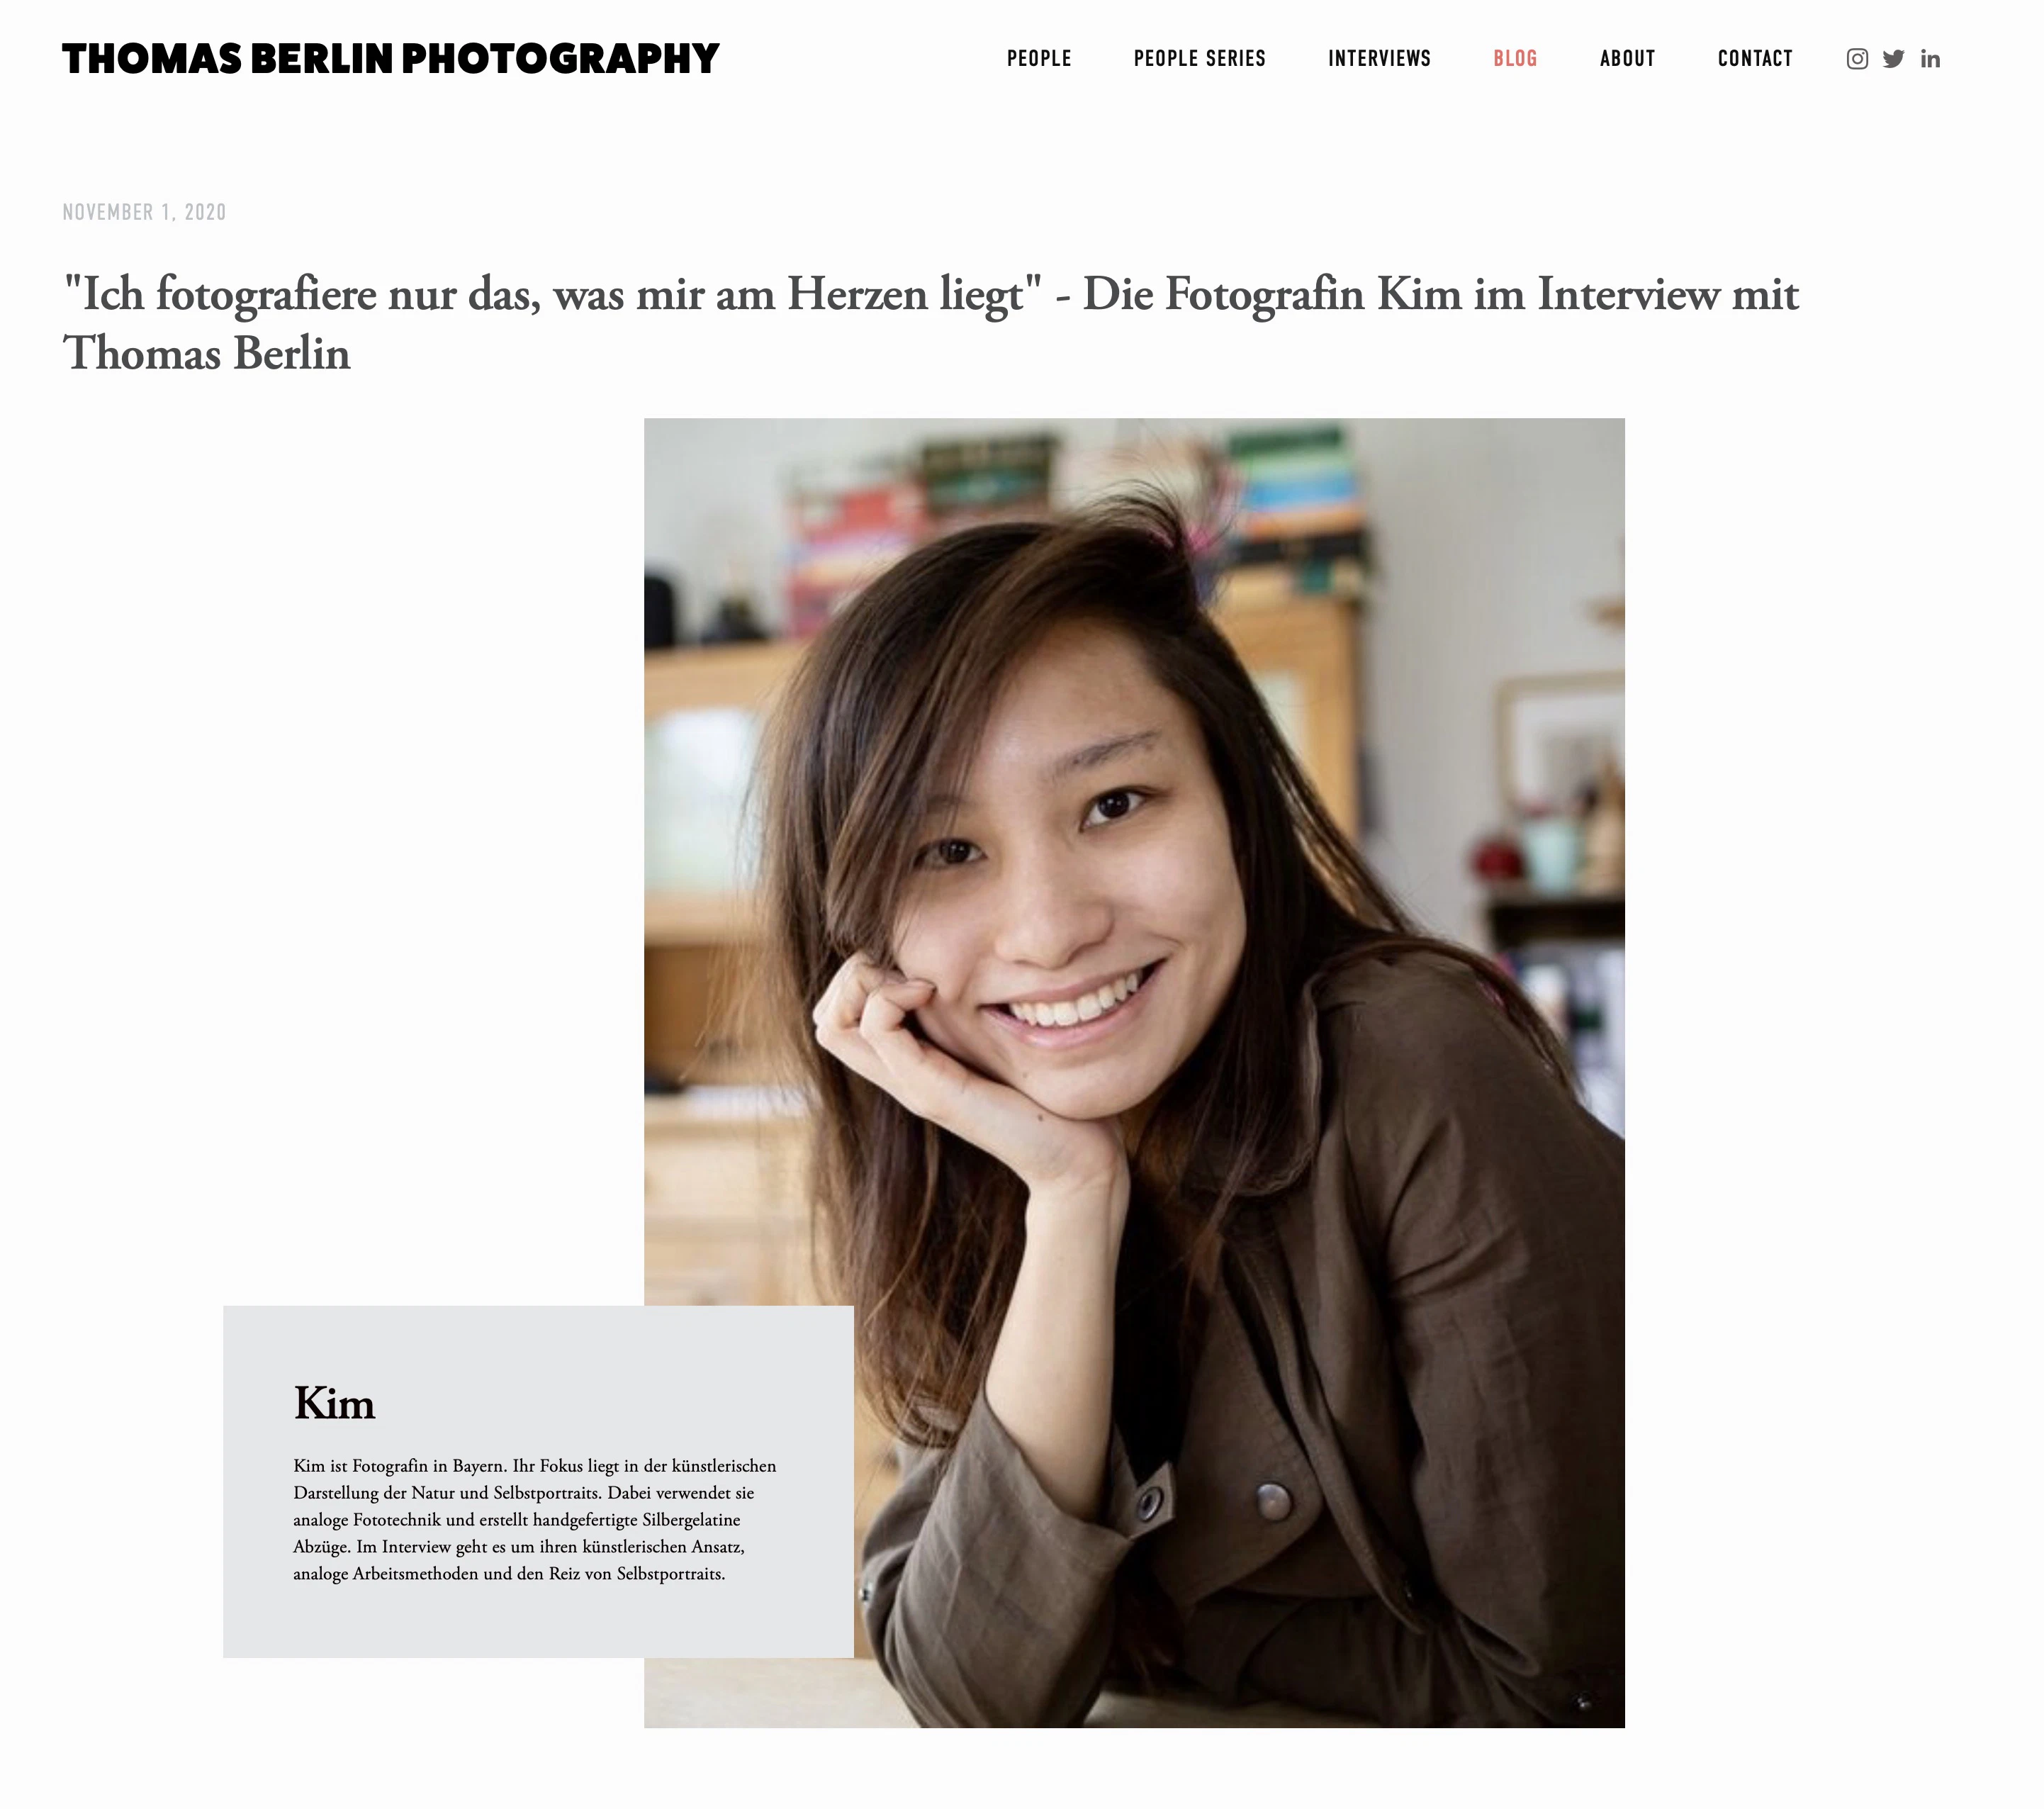 "Ich fotografiere nur das, was mir am Herzen liegt" - Die Fotografin Kim im Interview mit Thomas Berlin 